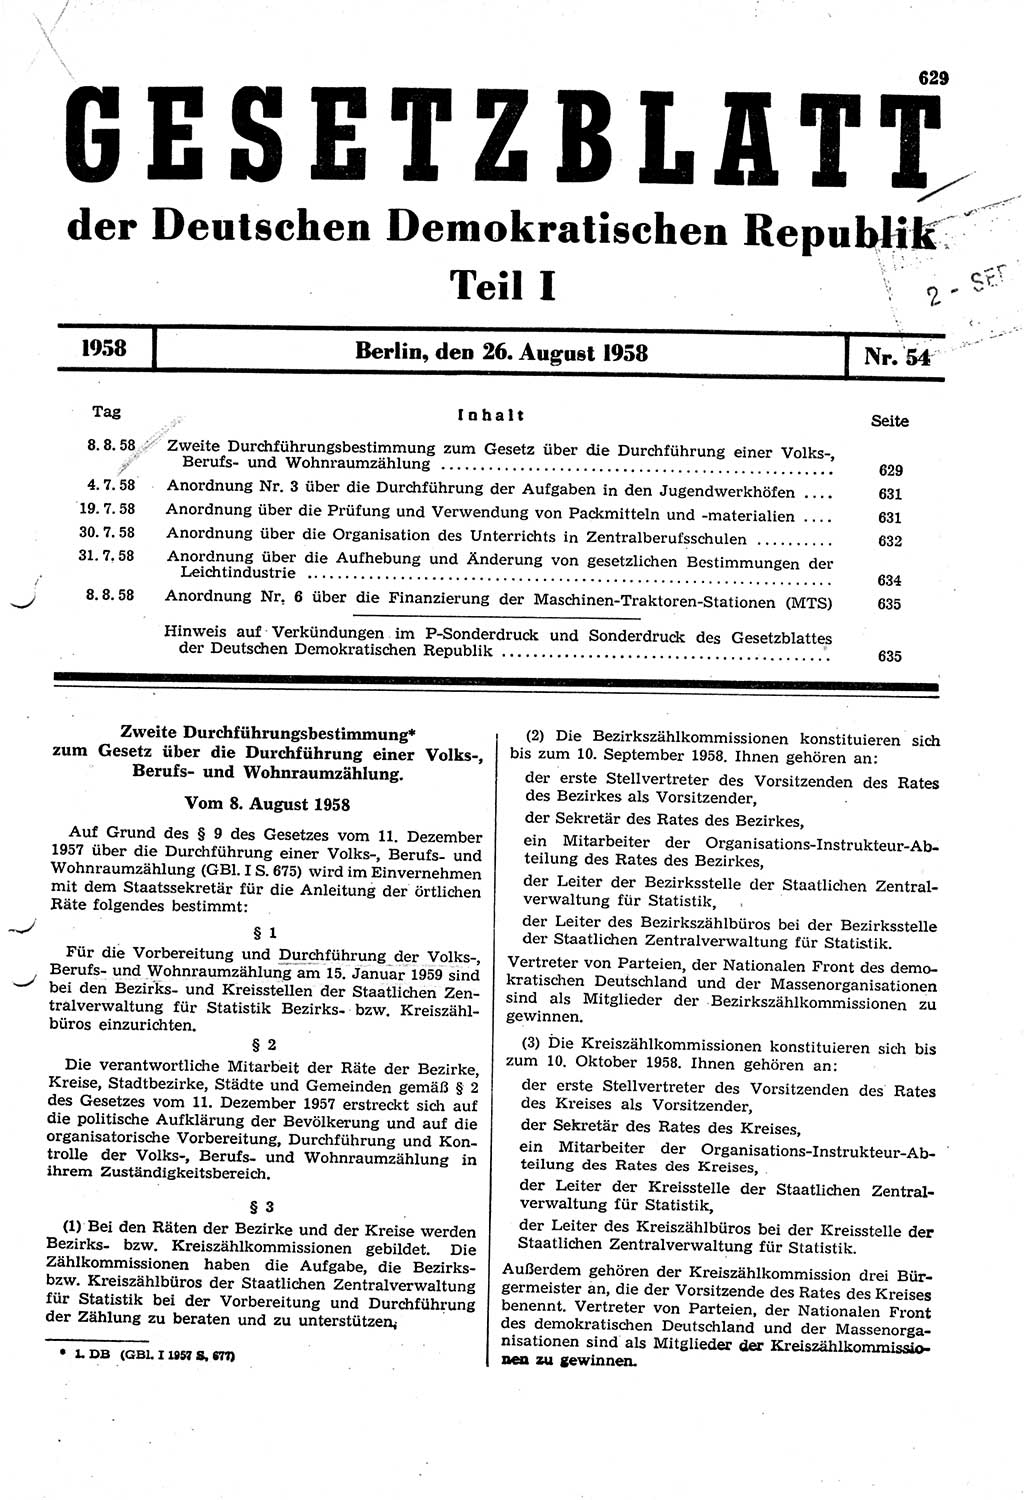 Gesetzblatt (GBl.) der Deutschen Demokratischen Republik (DDR) Teil Ⅰ 1958, Seite 629 (GBl. DDR Ⅰ 1958, S. 629)